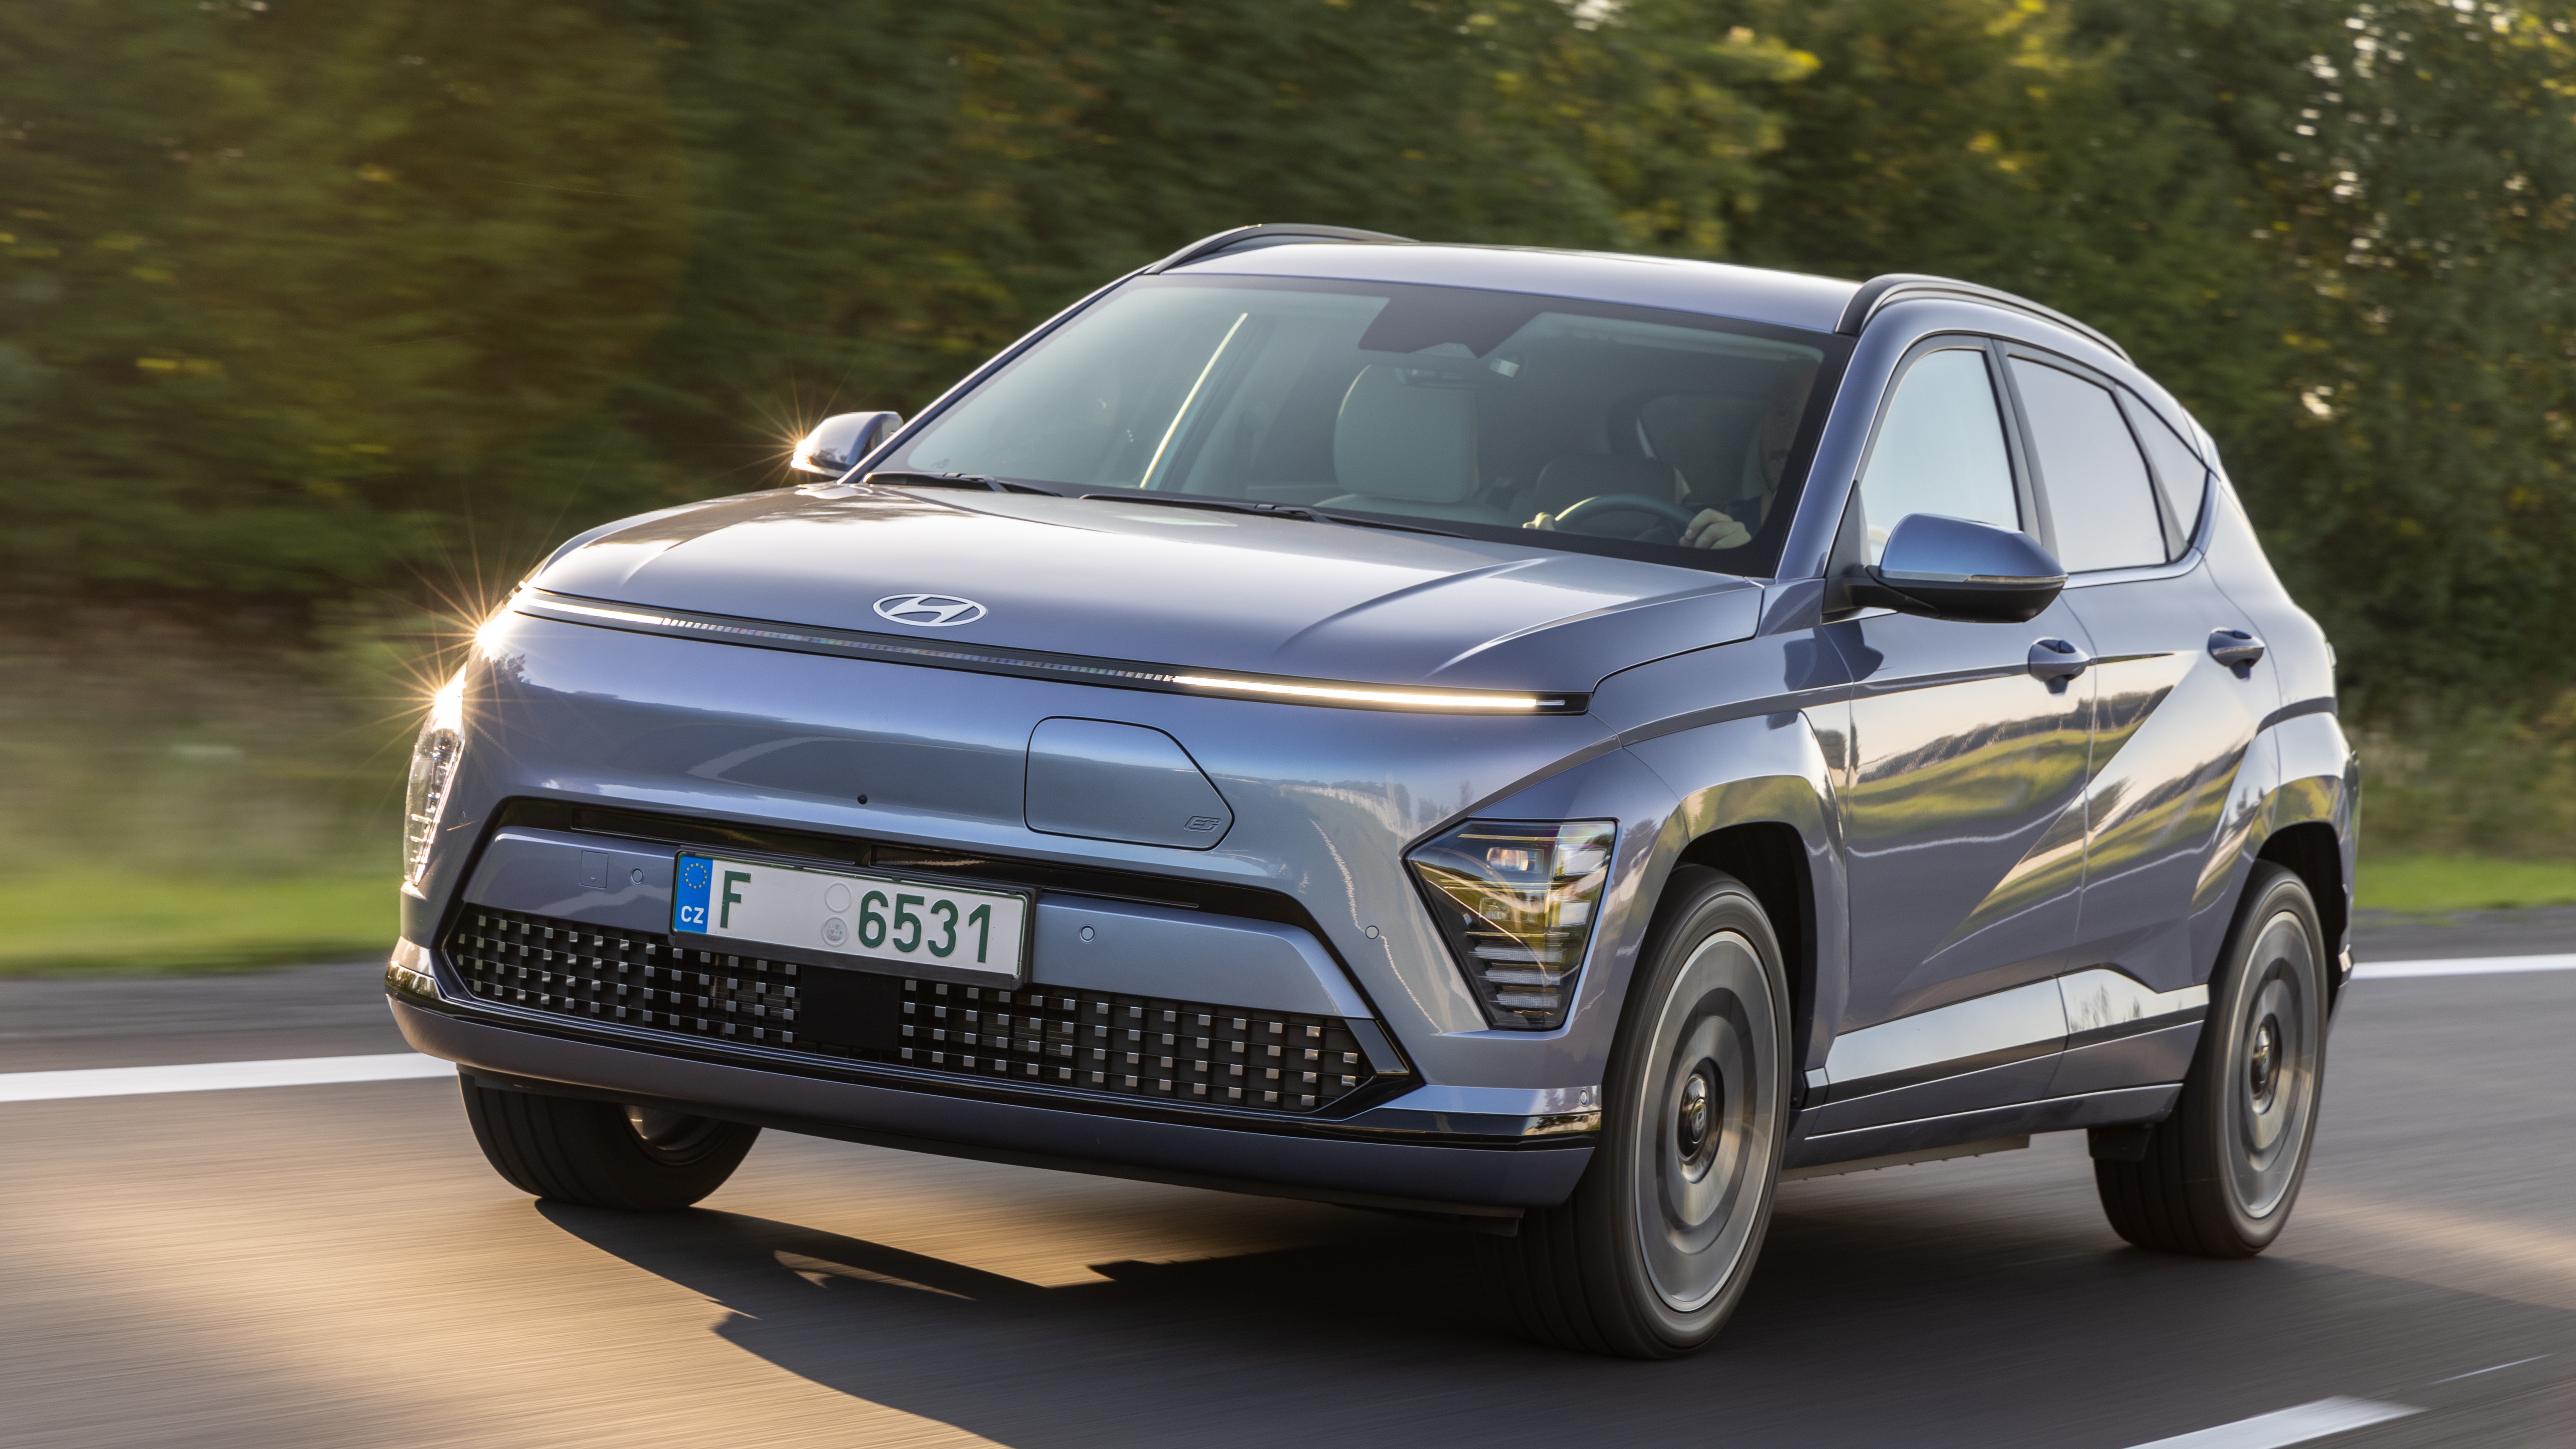 Hyundai präsentiert neuen Kona – und verspricht klassenbeste